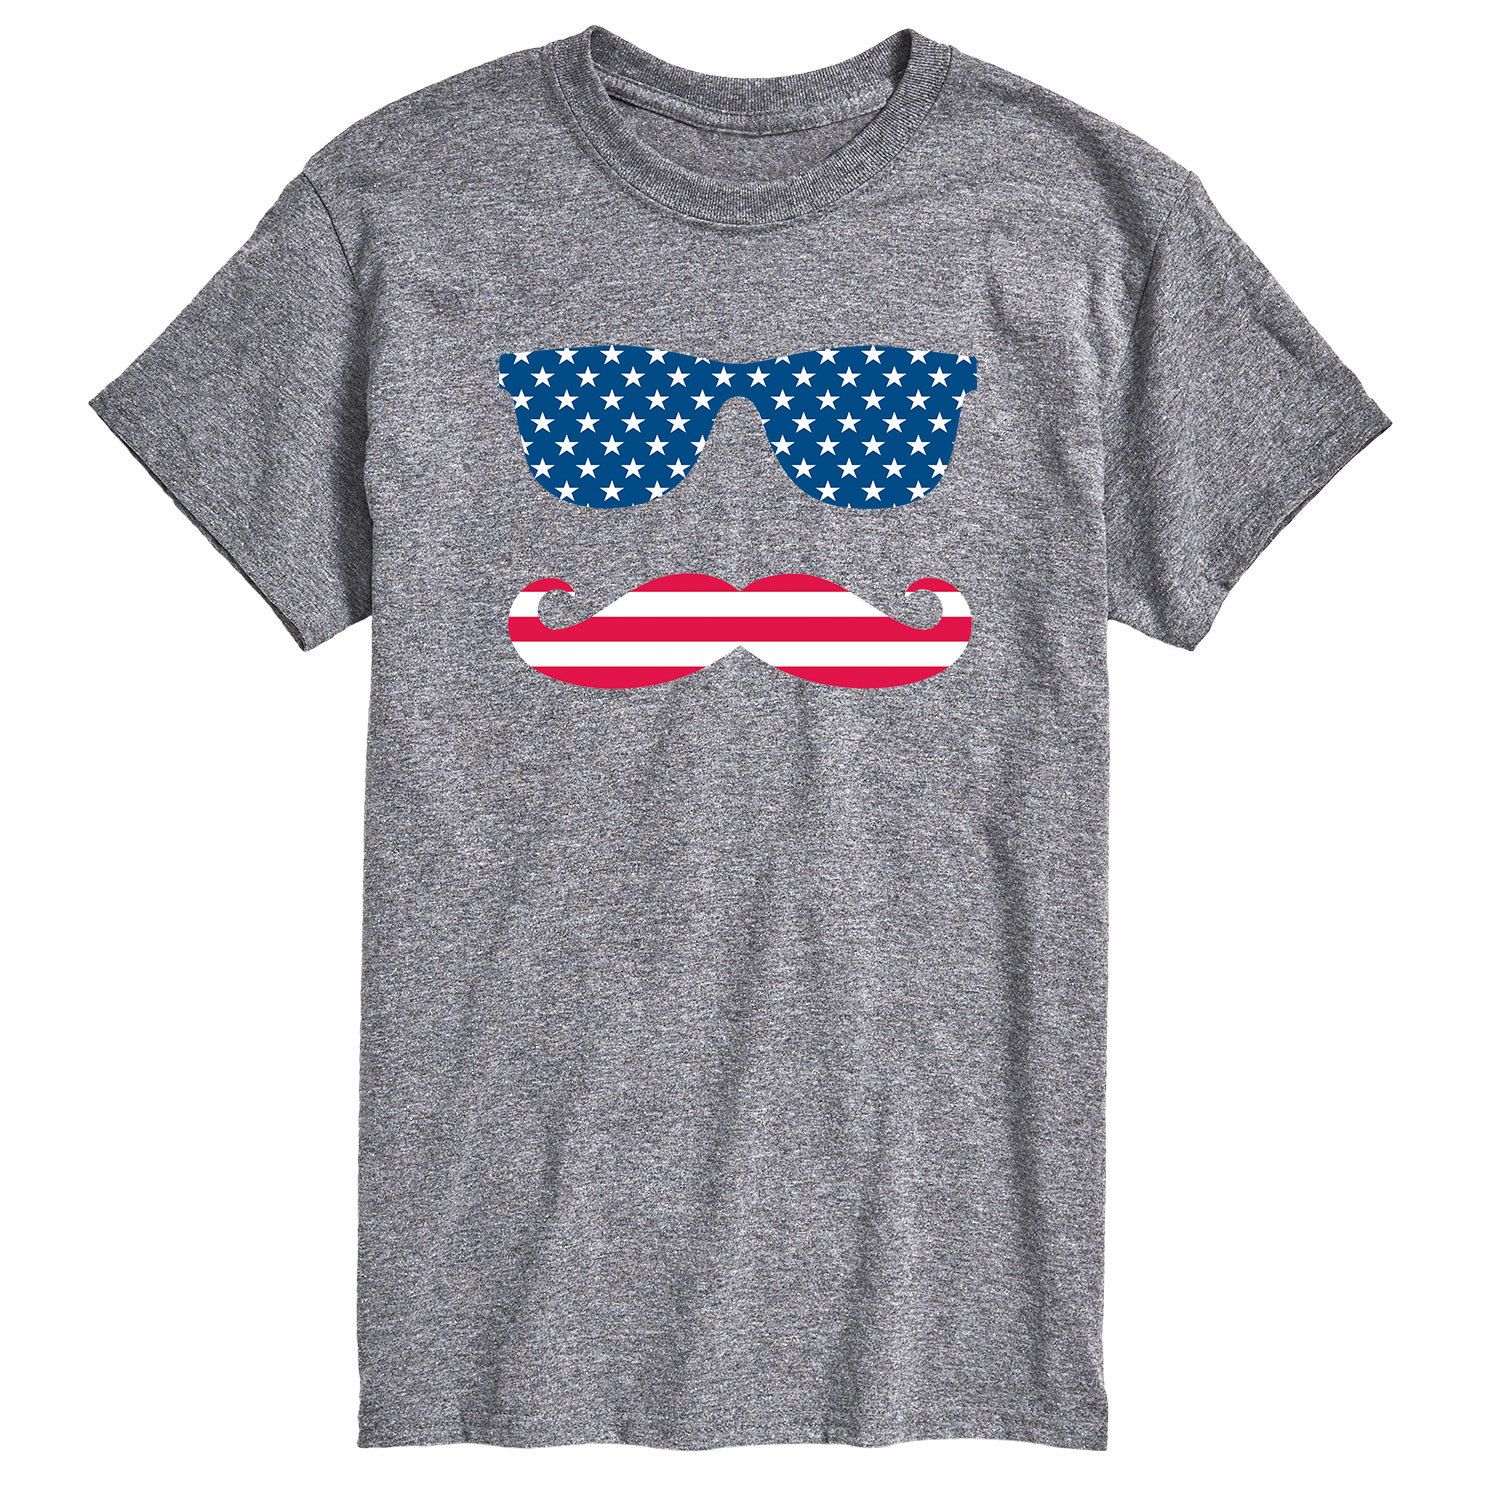 Мужская футболка с патриотическими усами и очками Licensed Character